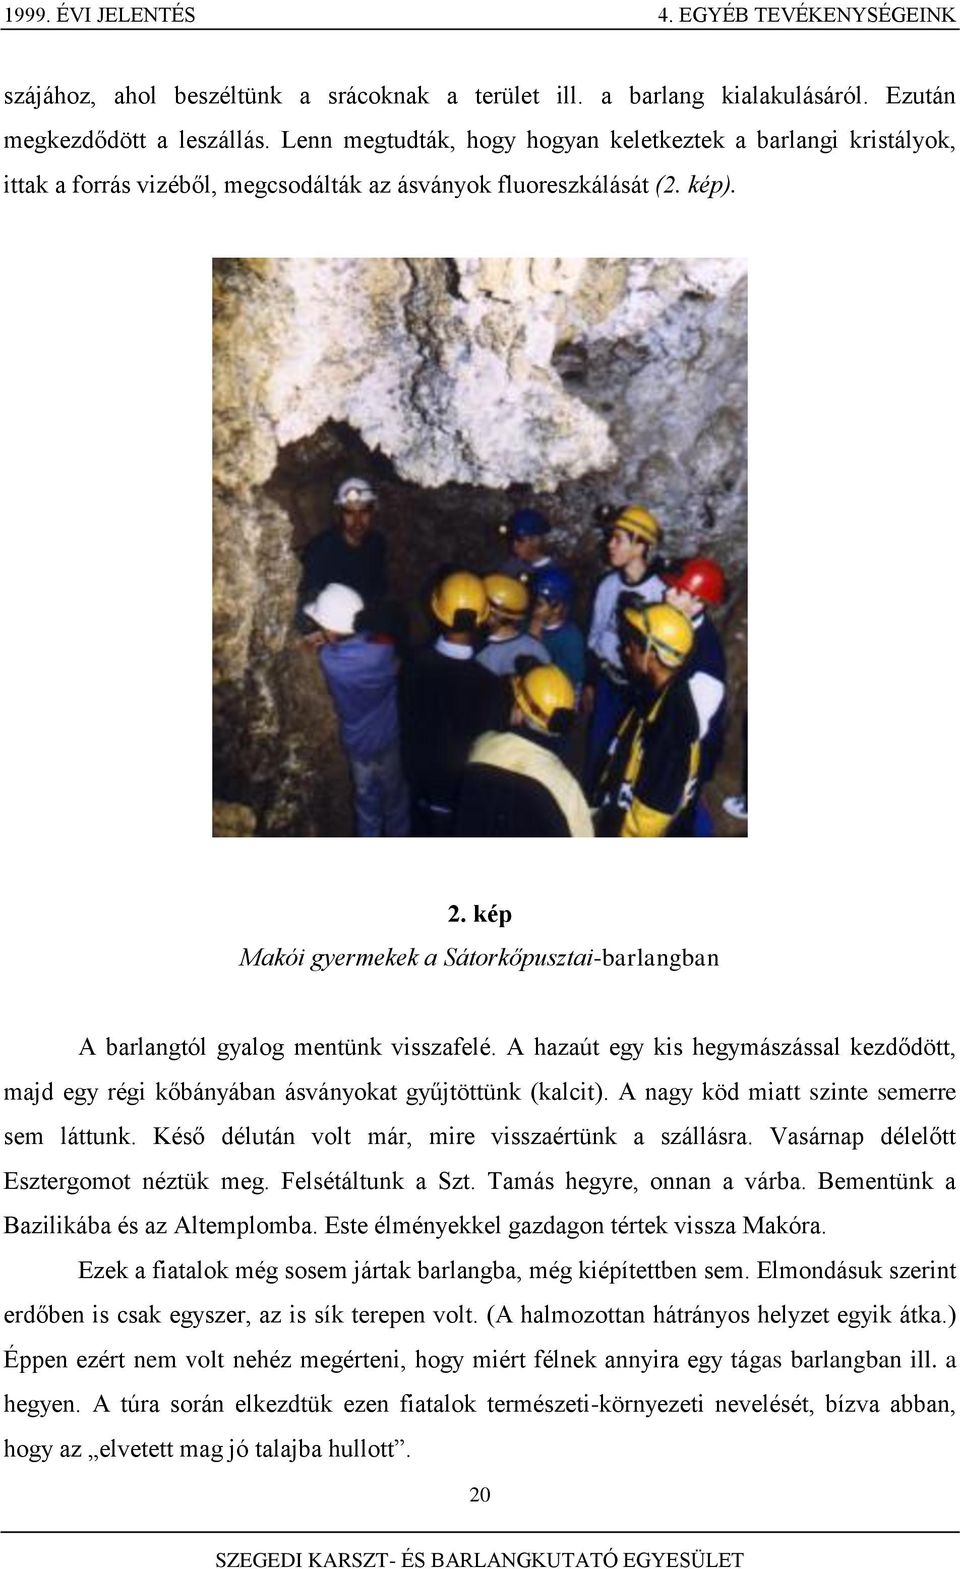 kép Makói gyermekek a Sátorkőpusztai-barlangban A barlangtól gyalog mentünk visszafelé. A hazaút egy kis hegymászással kezdődött, majd egy régi kőbányában ásványokat gyűjtöttünk (kalcit).